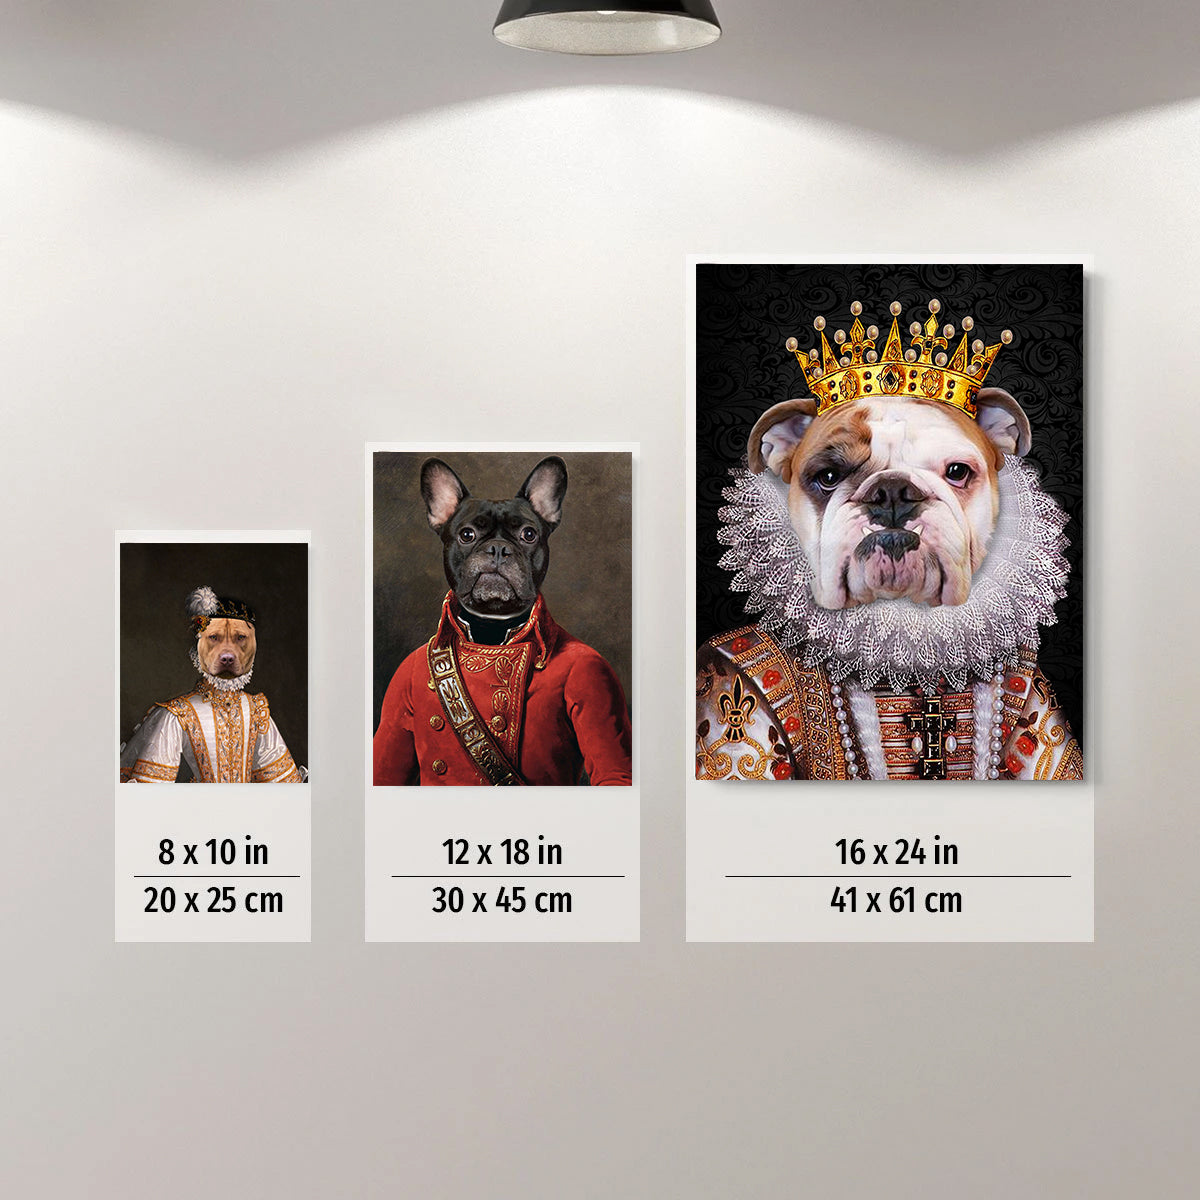 The Pop Star Custom Pet Portrait Canvas - Noble Pawtrait